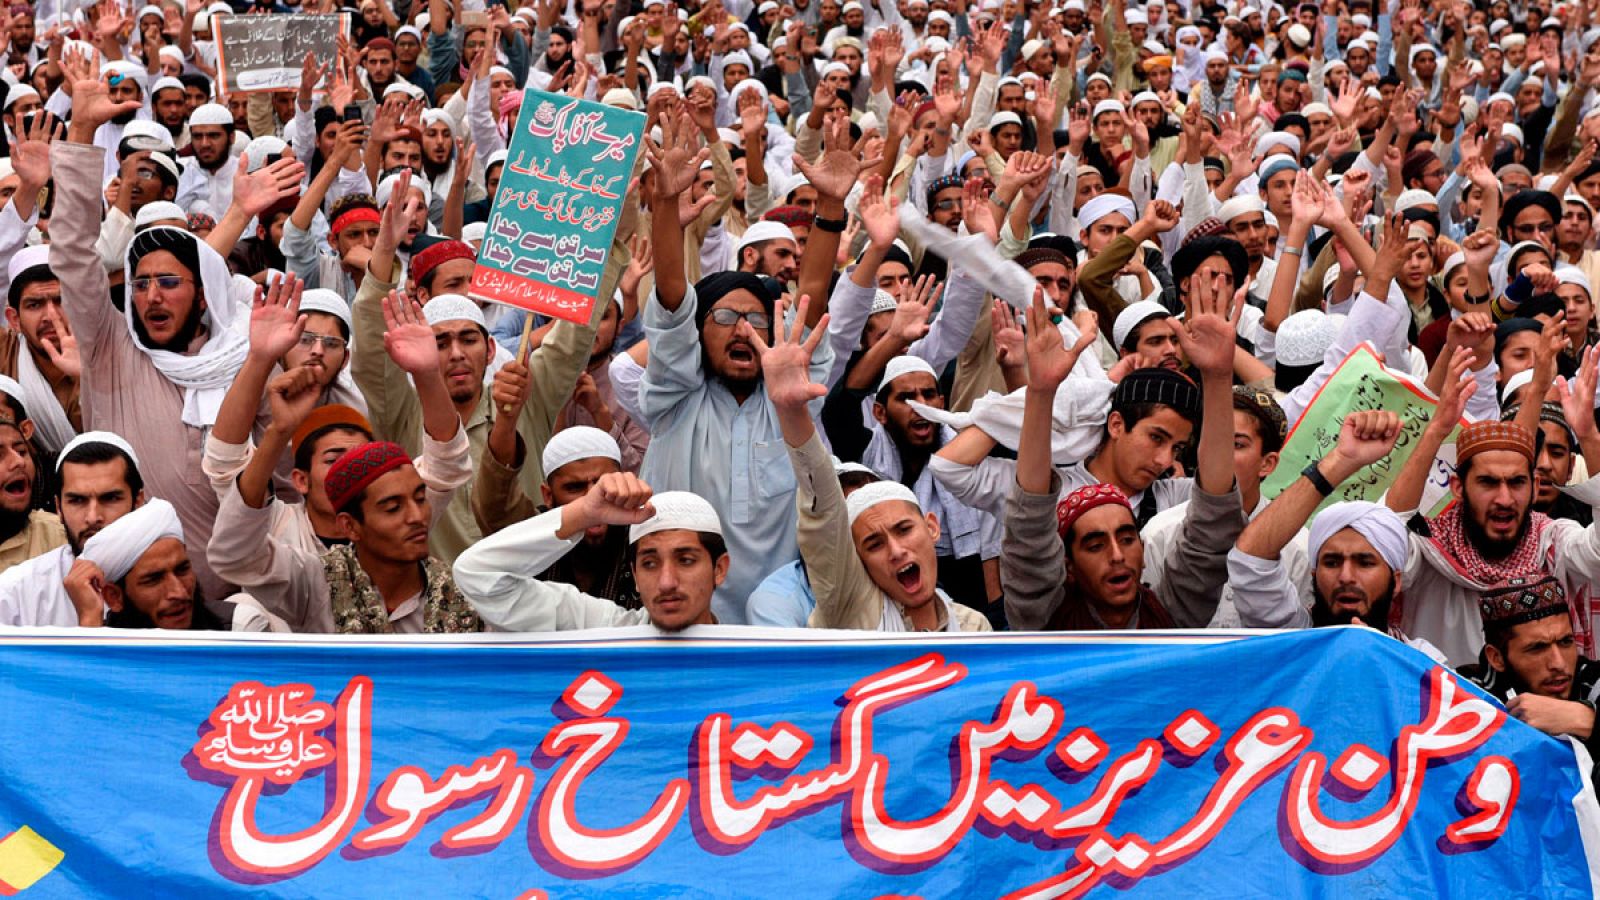 Islamistas en una protesta contra la abolución de Asia Bibi en Pakistán